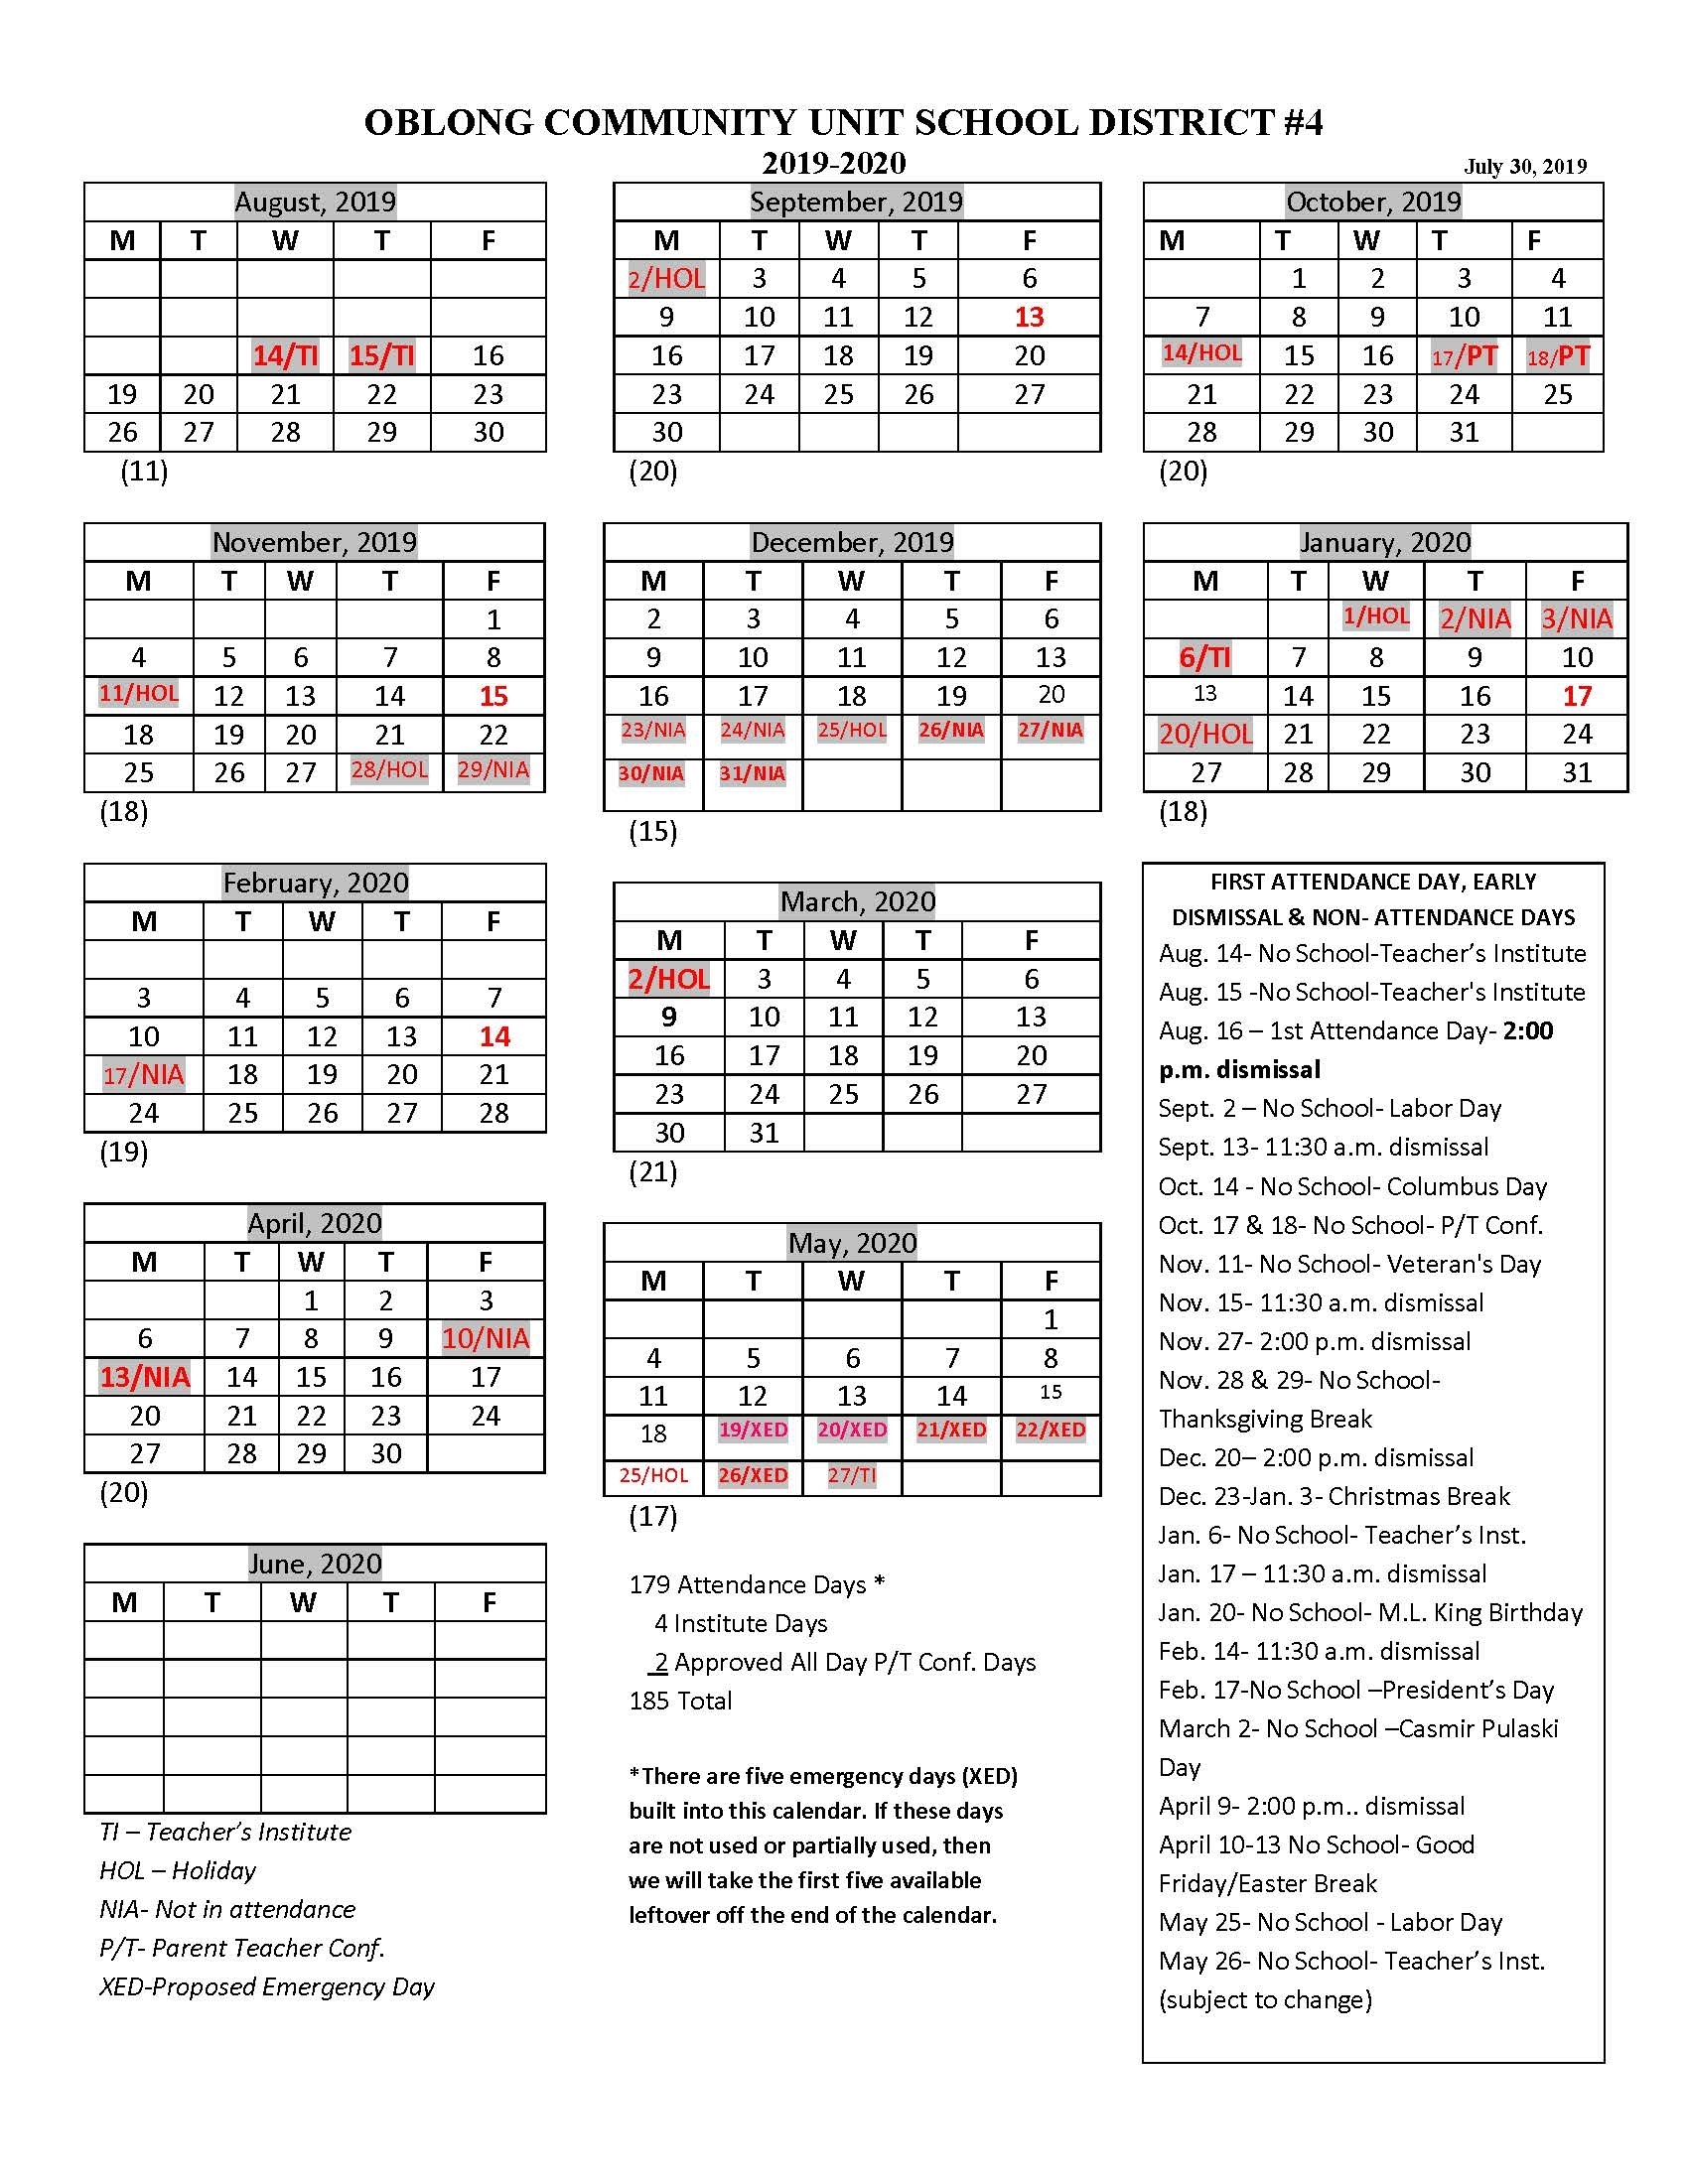 Oblong Cusd #4 :: District Calendar